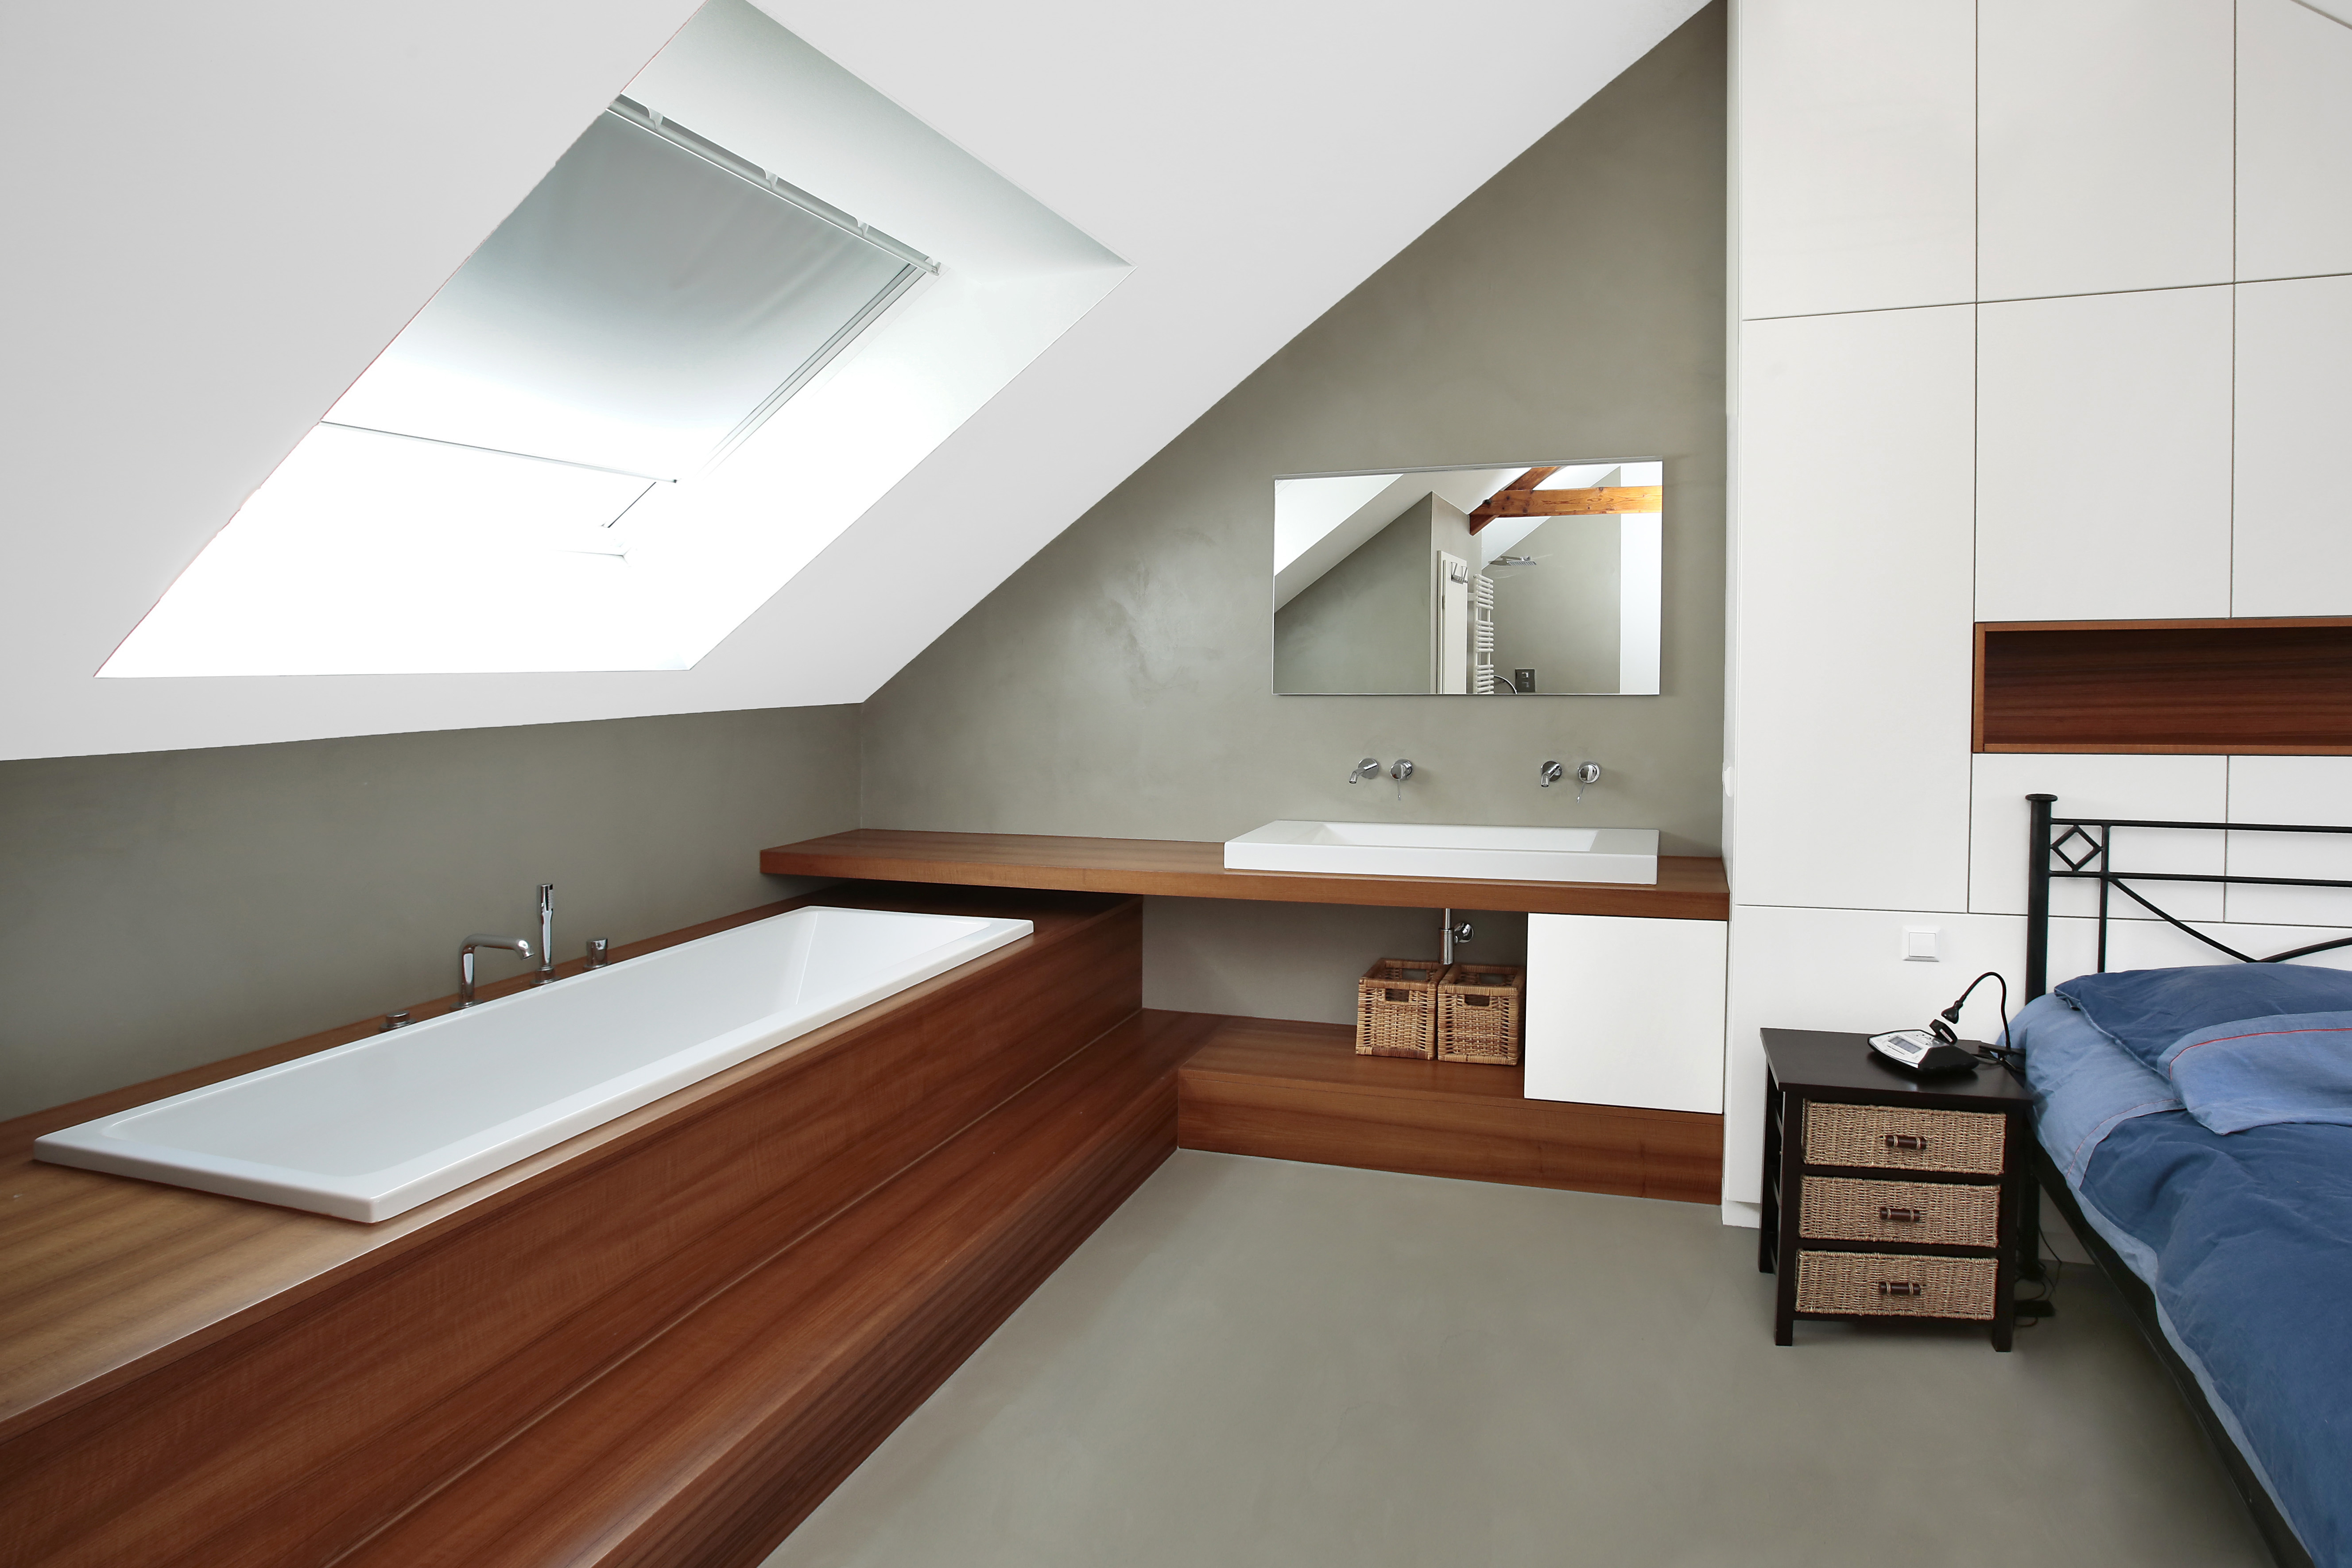 Mikrozementboden im Zimmer mit integrierter Badewanne